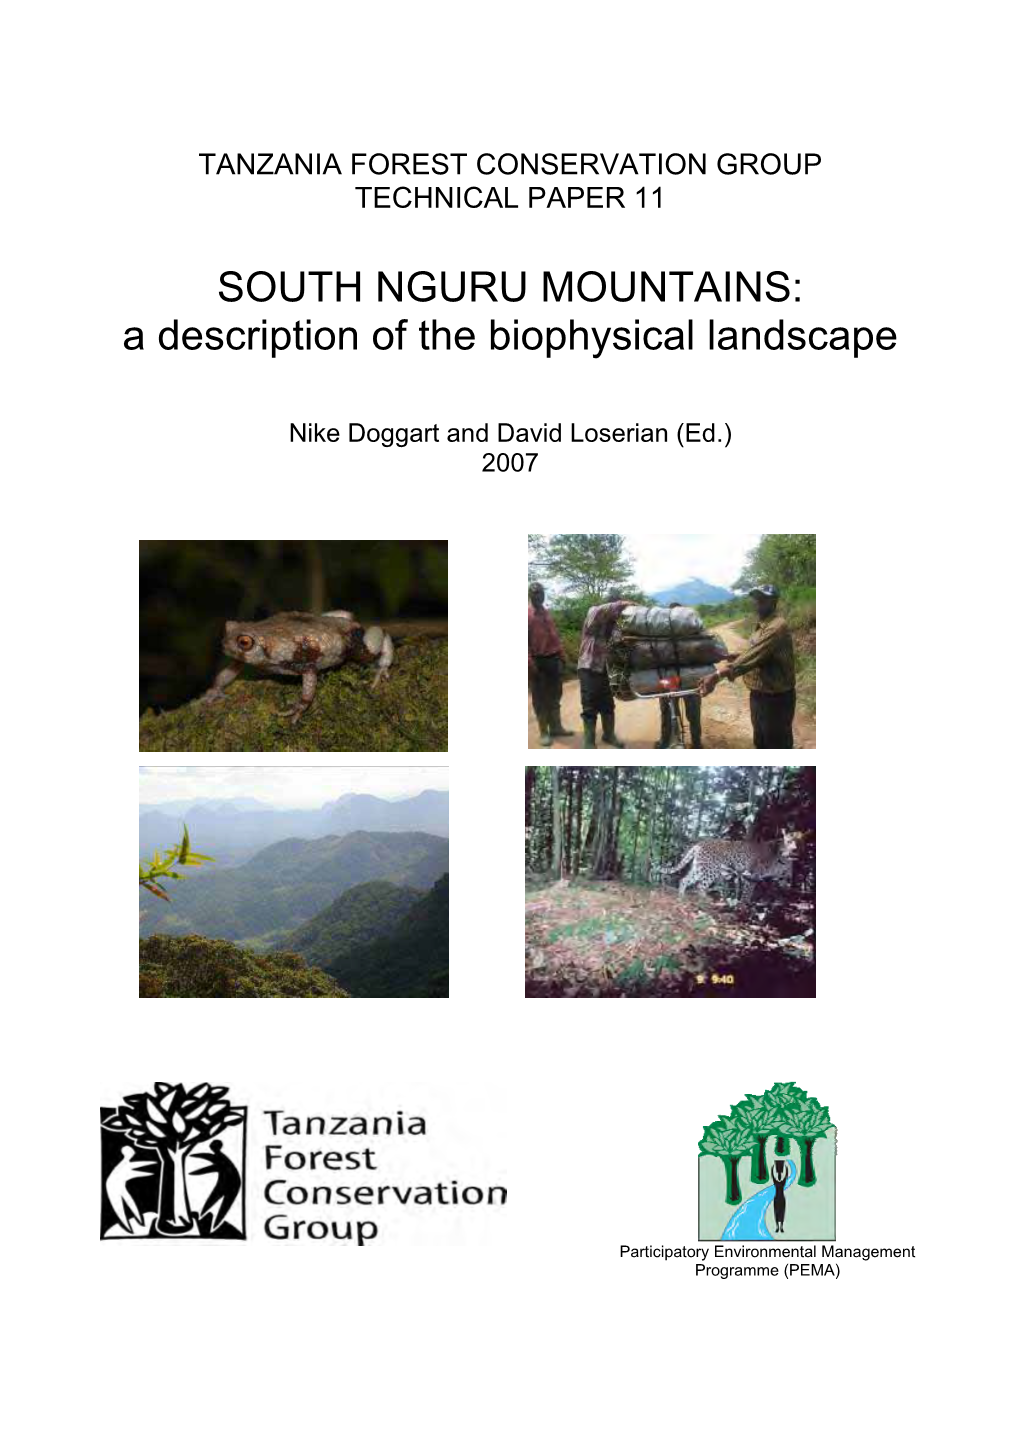 SOUTH NGURU MOUNTAINS: a Description of the Biophysical Landscape